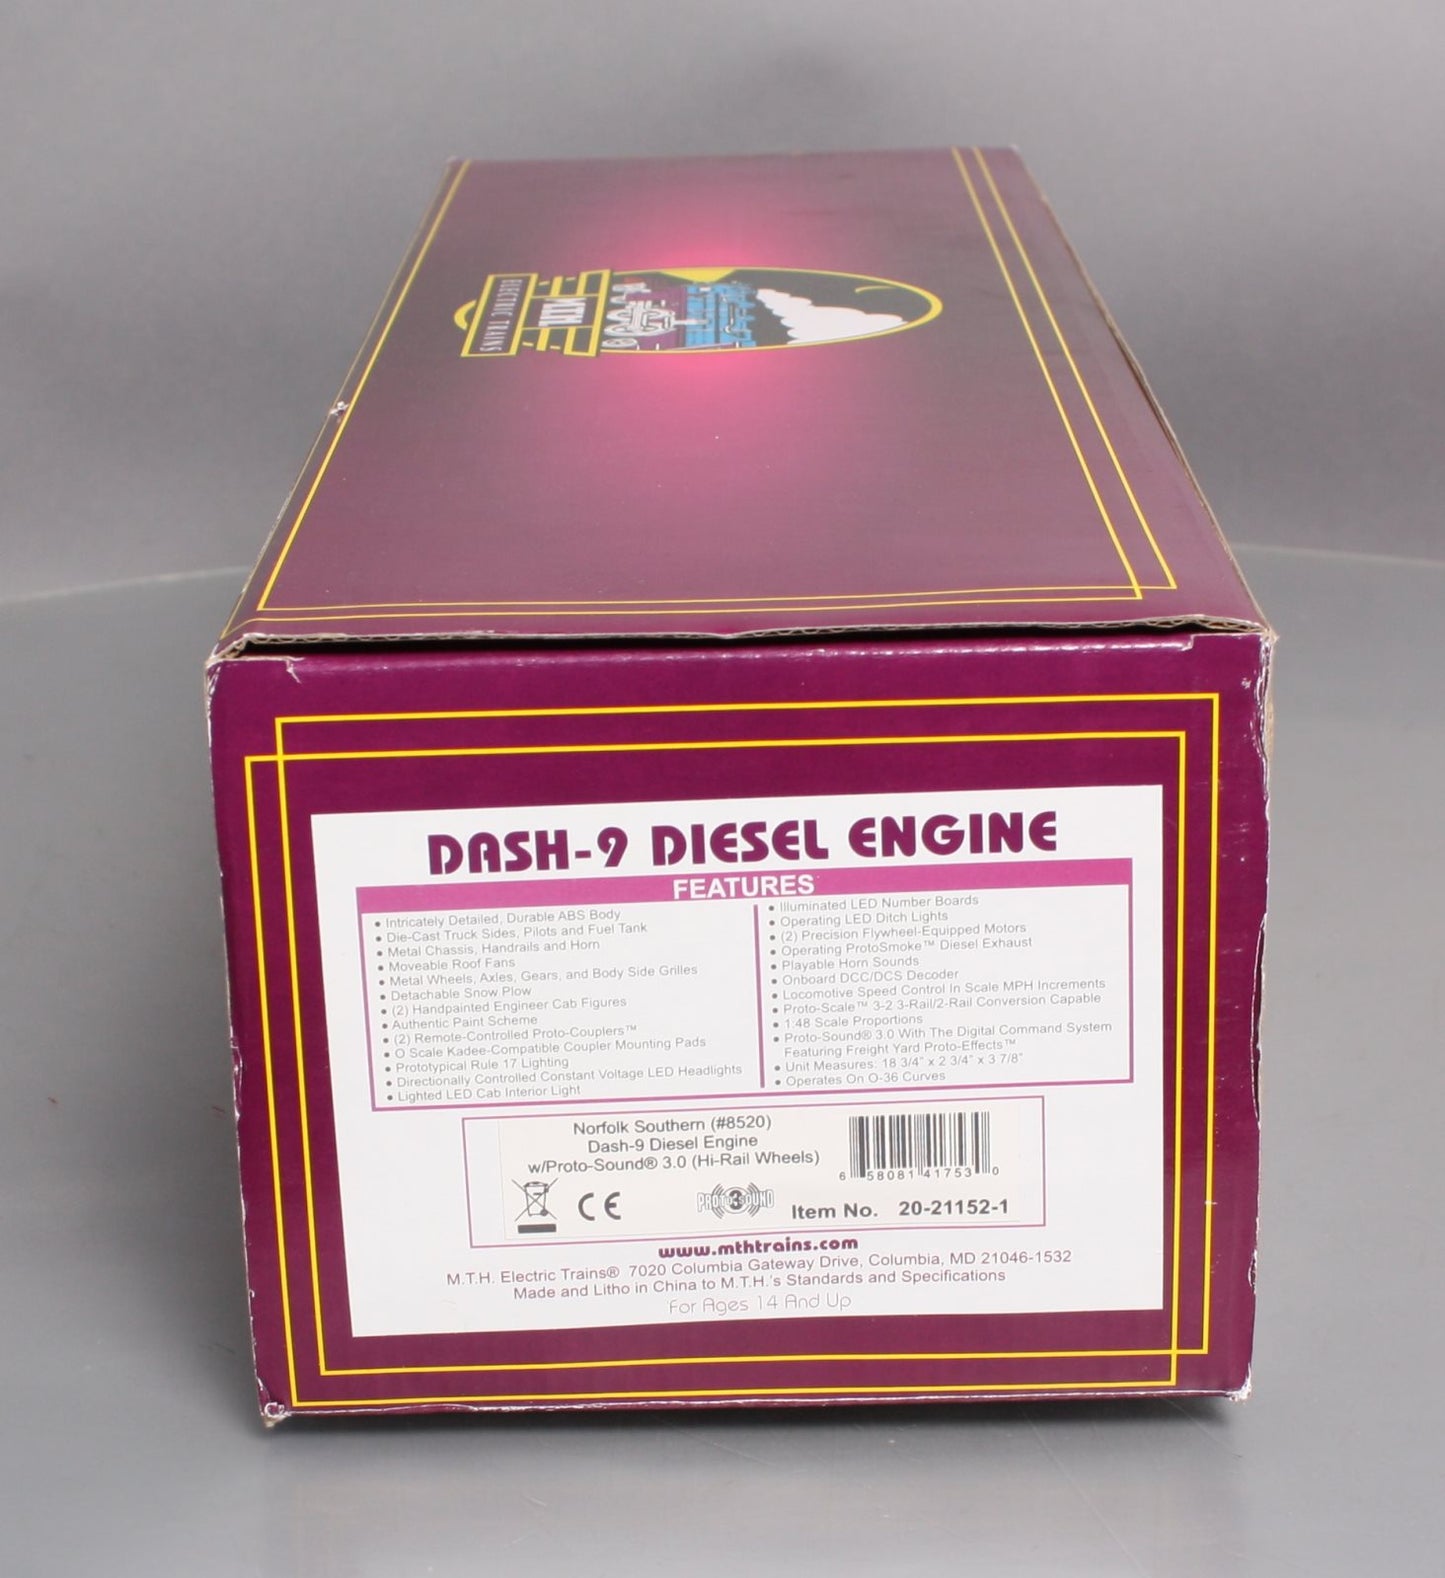 MTH 20-21152-1 Norfolk Southern Dash-9 Diesel Engine Proto-Sound 3.0 #8520